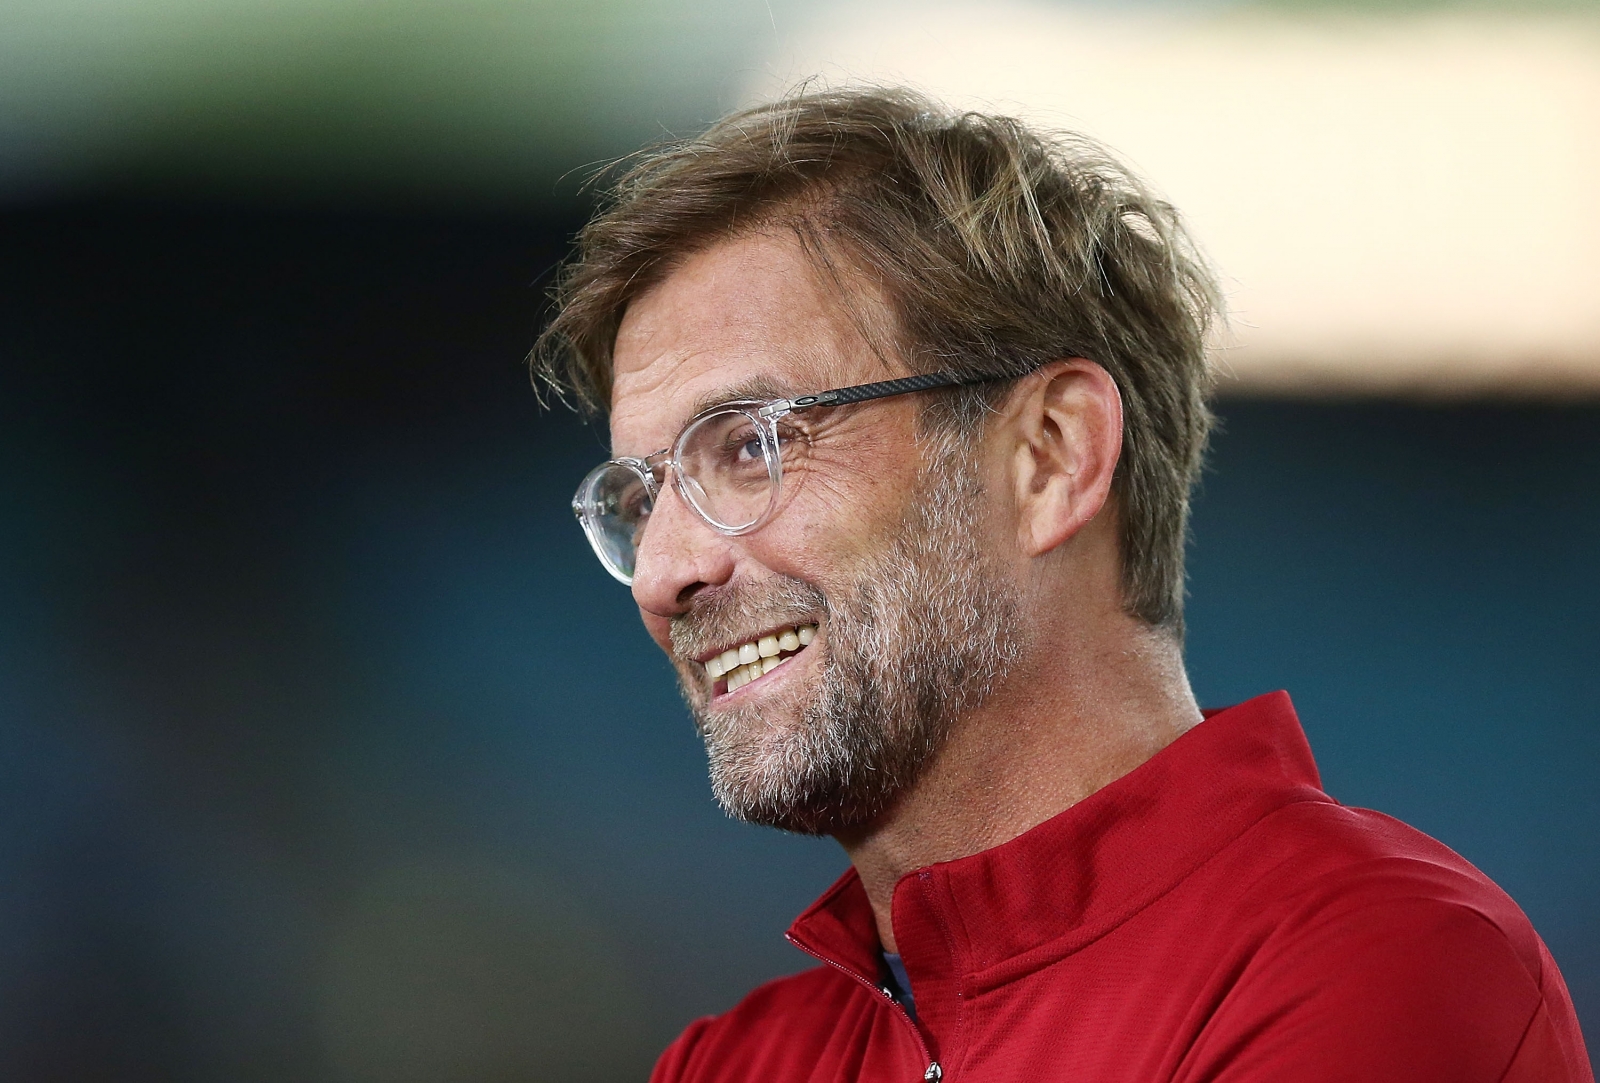 Liverpool boss Jurgen Klopp expected to manage Bayern Munich1600 x 1083